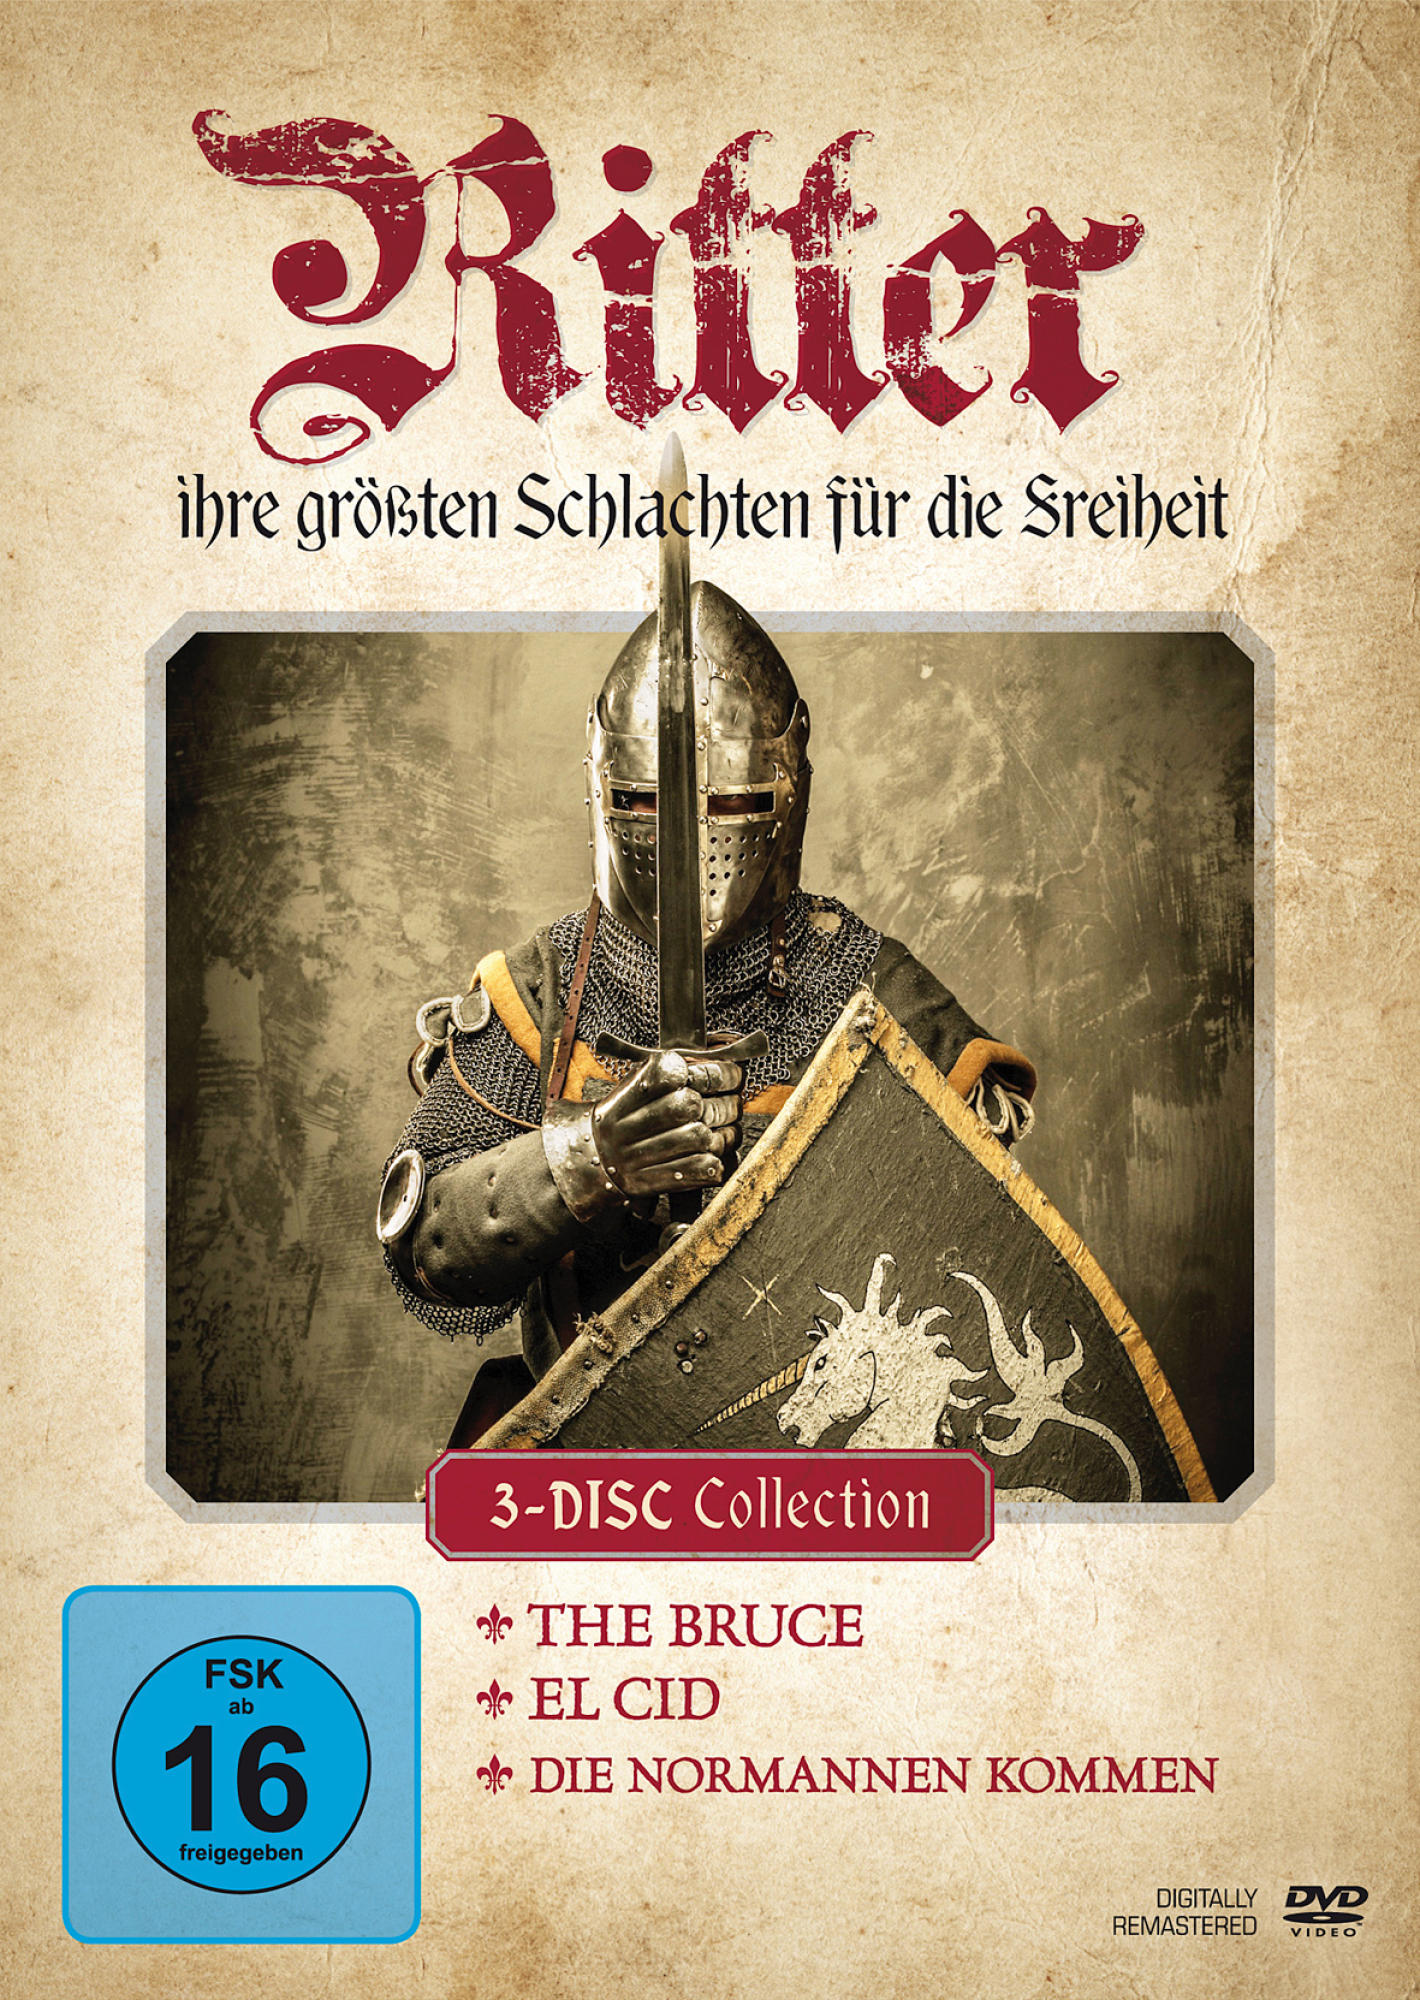 Ritter - Ihre Schlachten Größten DVD für die Freiheit